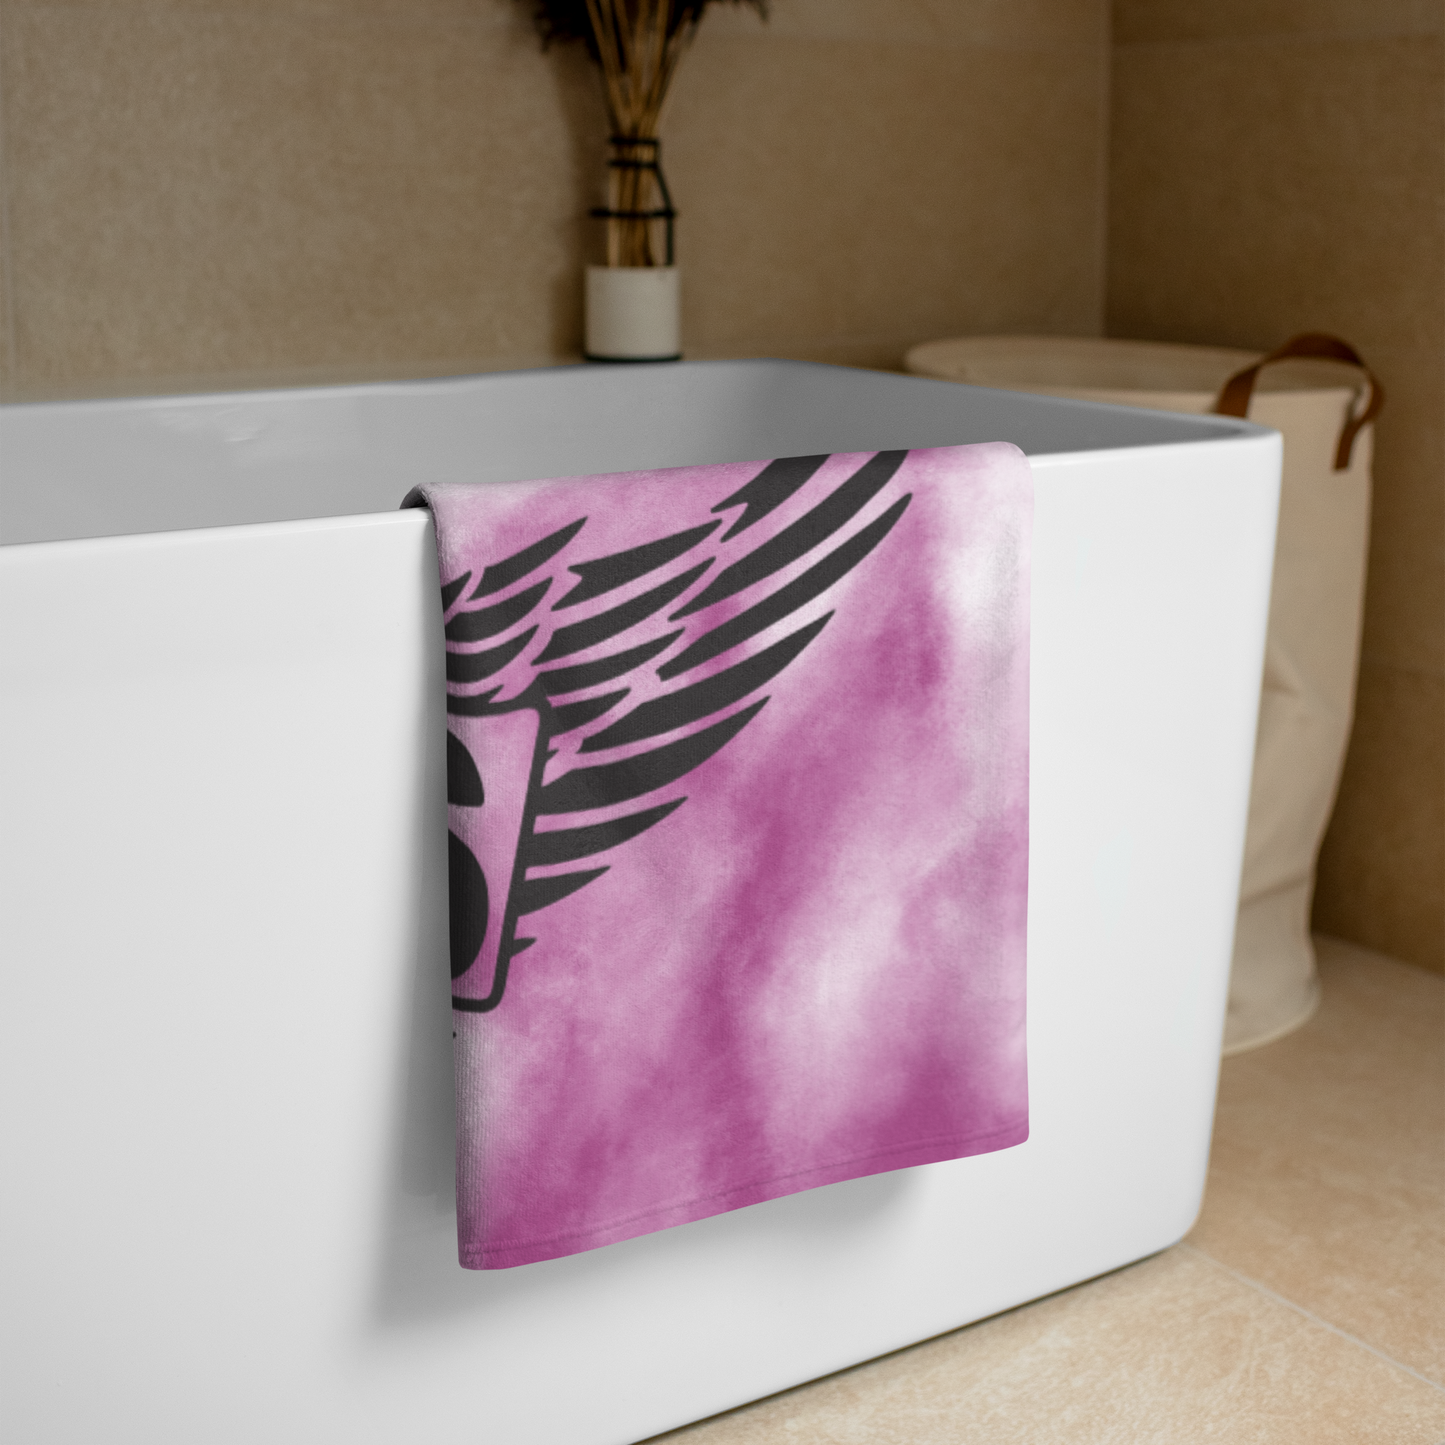 BMFS 33 Wings Beach Towel | 30"x60" | Phan Art | 33 | Bluegrass